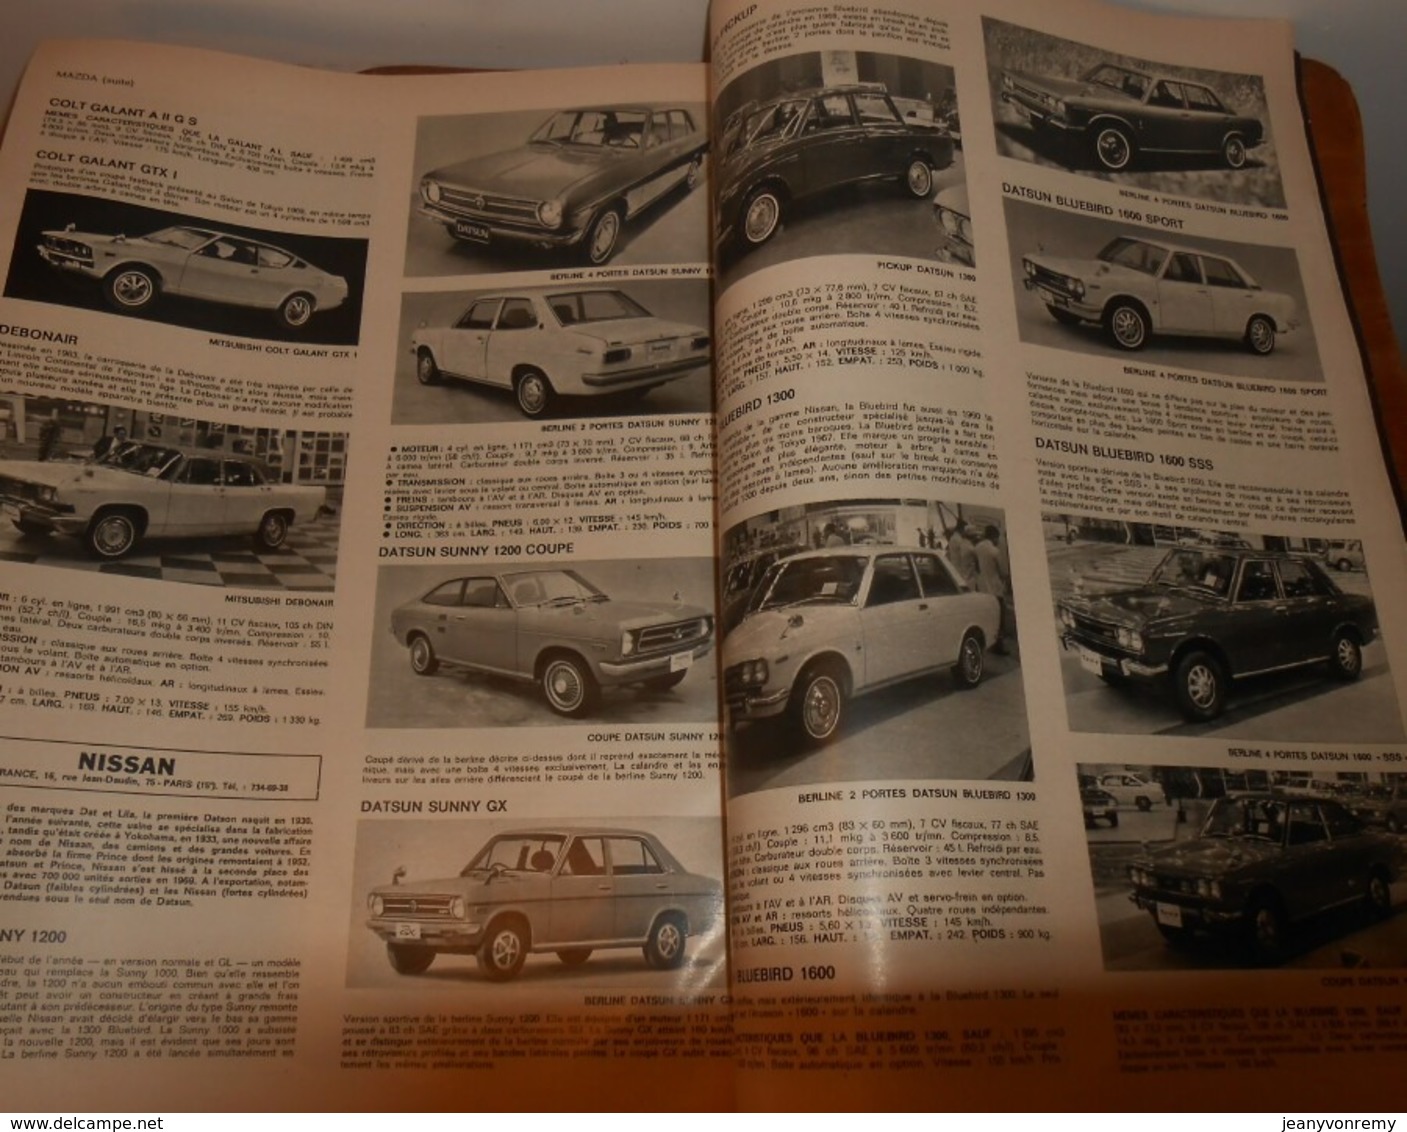 Le Salon de l'Auto. L'auto journal. Catalogue complet de la production mondiale. 1970.